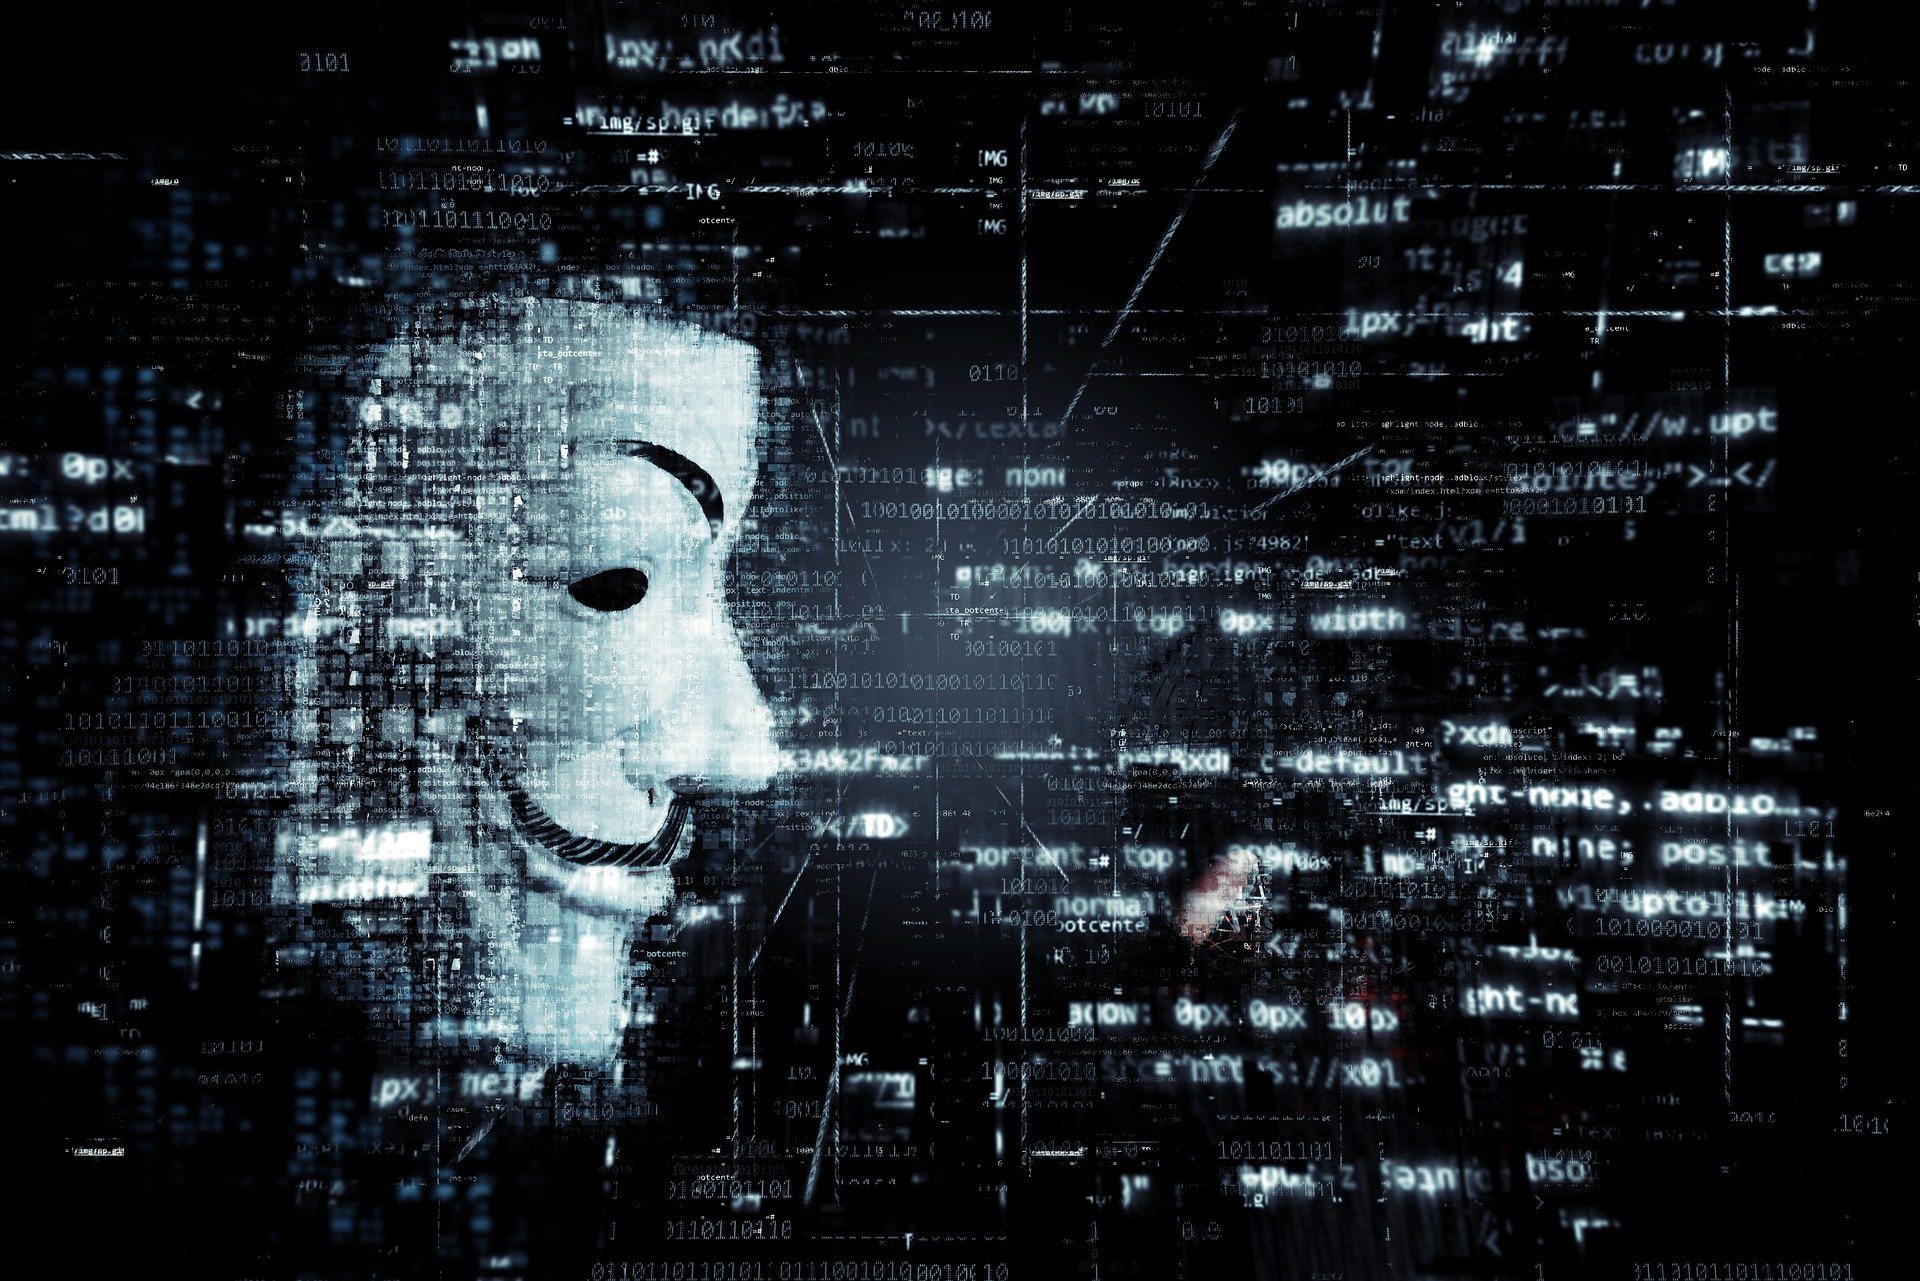 Guerra na Ucrânia: Anonymous ataca emissoras de TV da Rússia